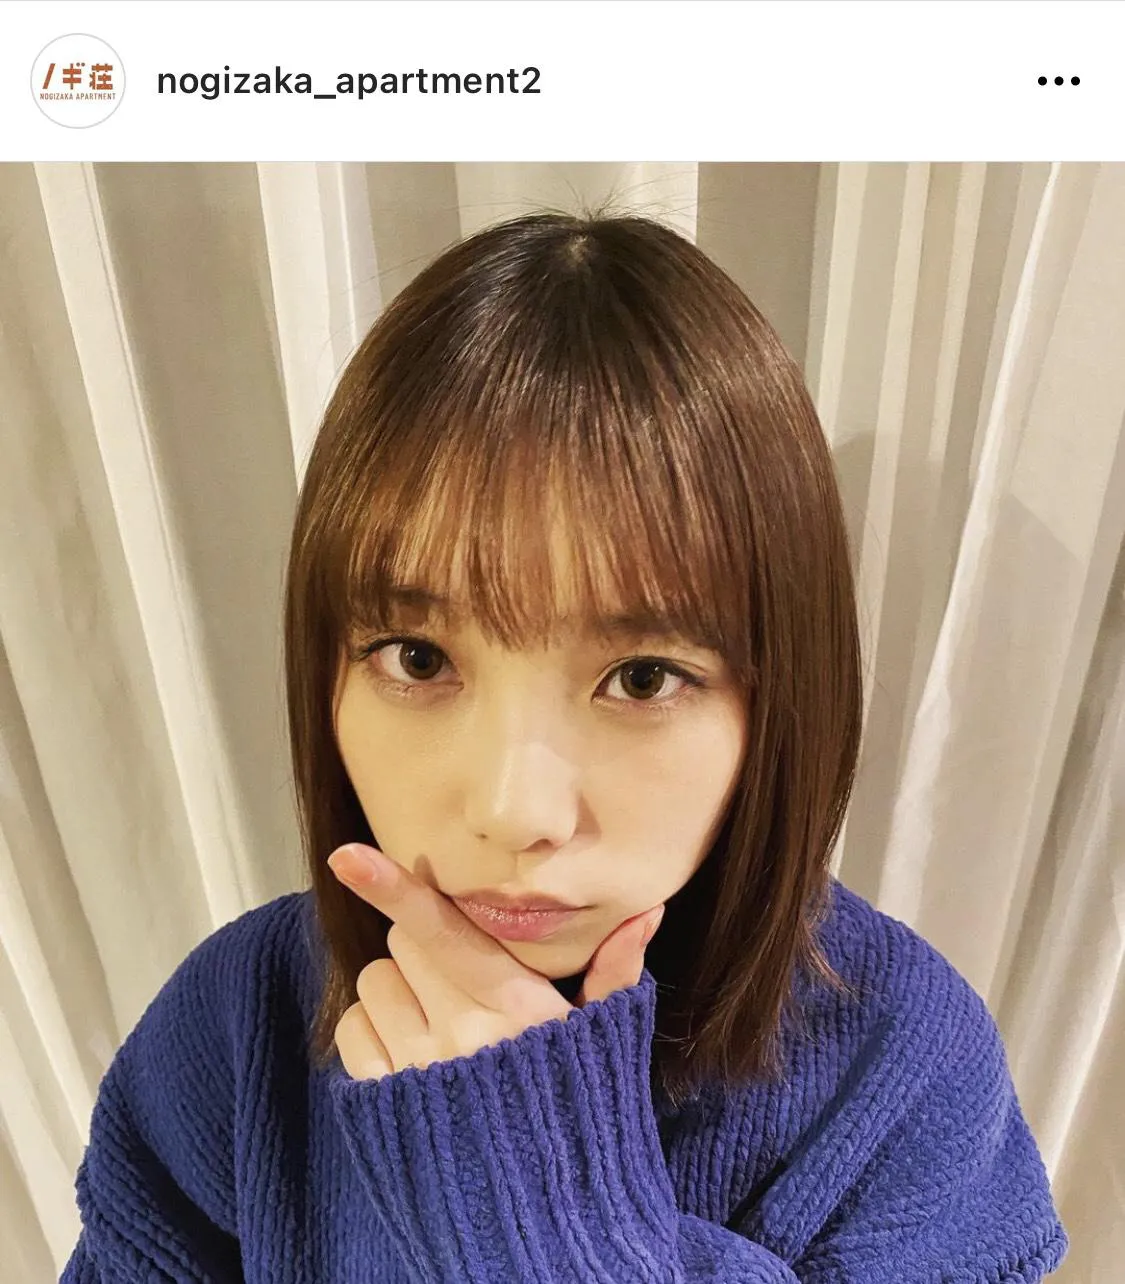 ※「乃木坂毎月劇場」公式Instagram(nogizaka_apartment2)より